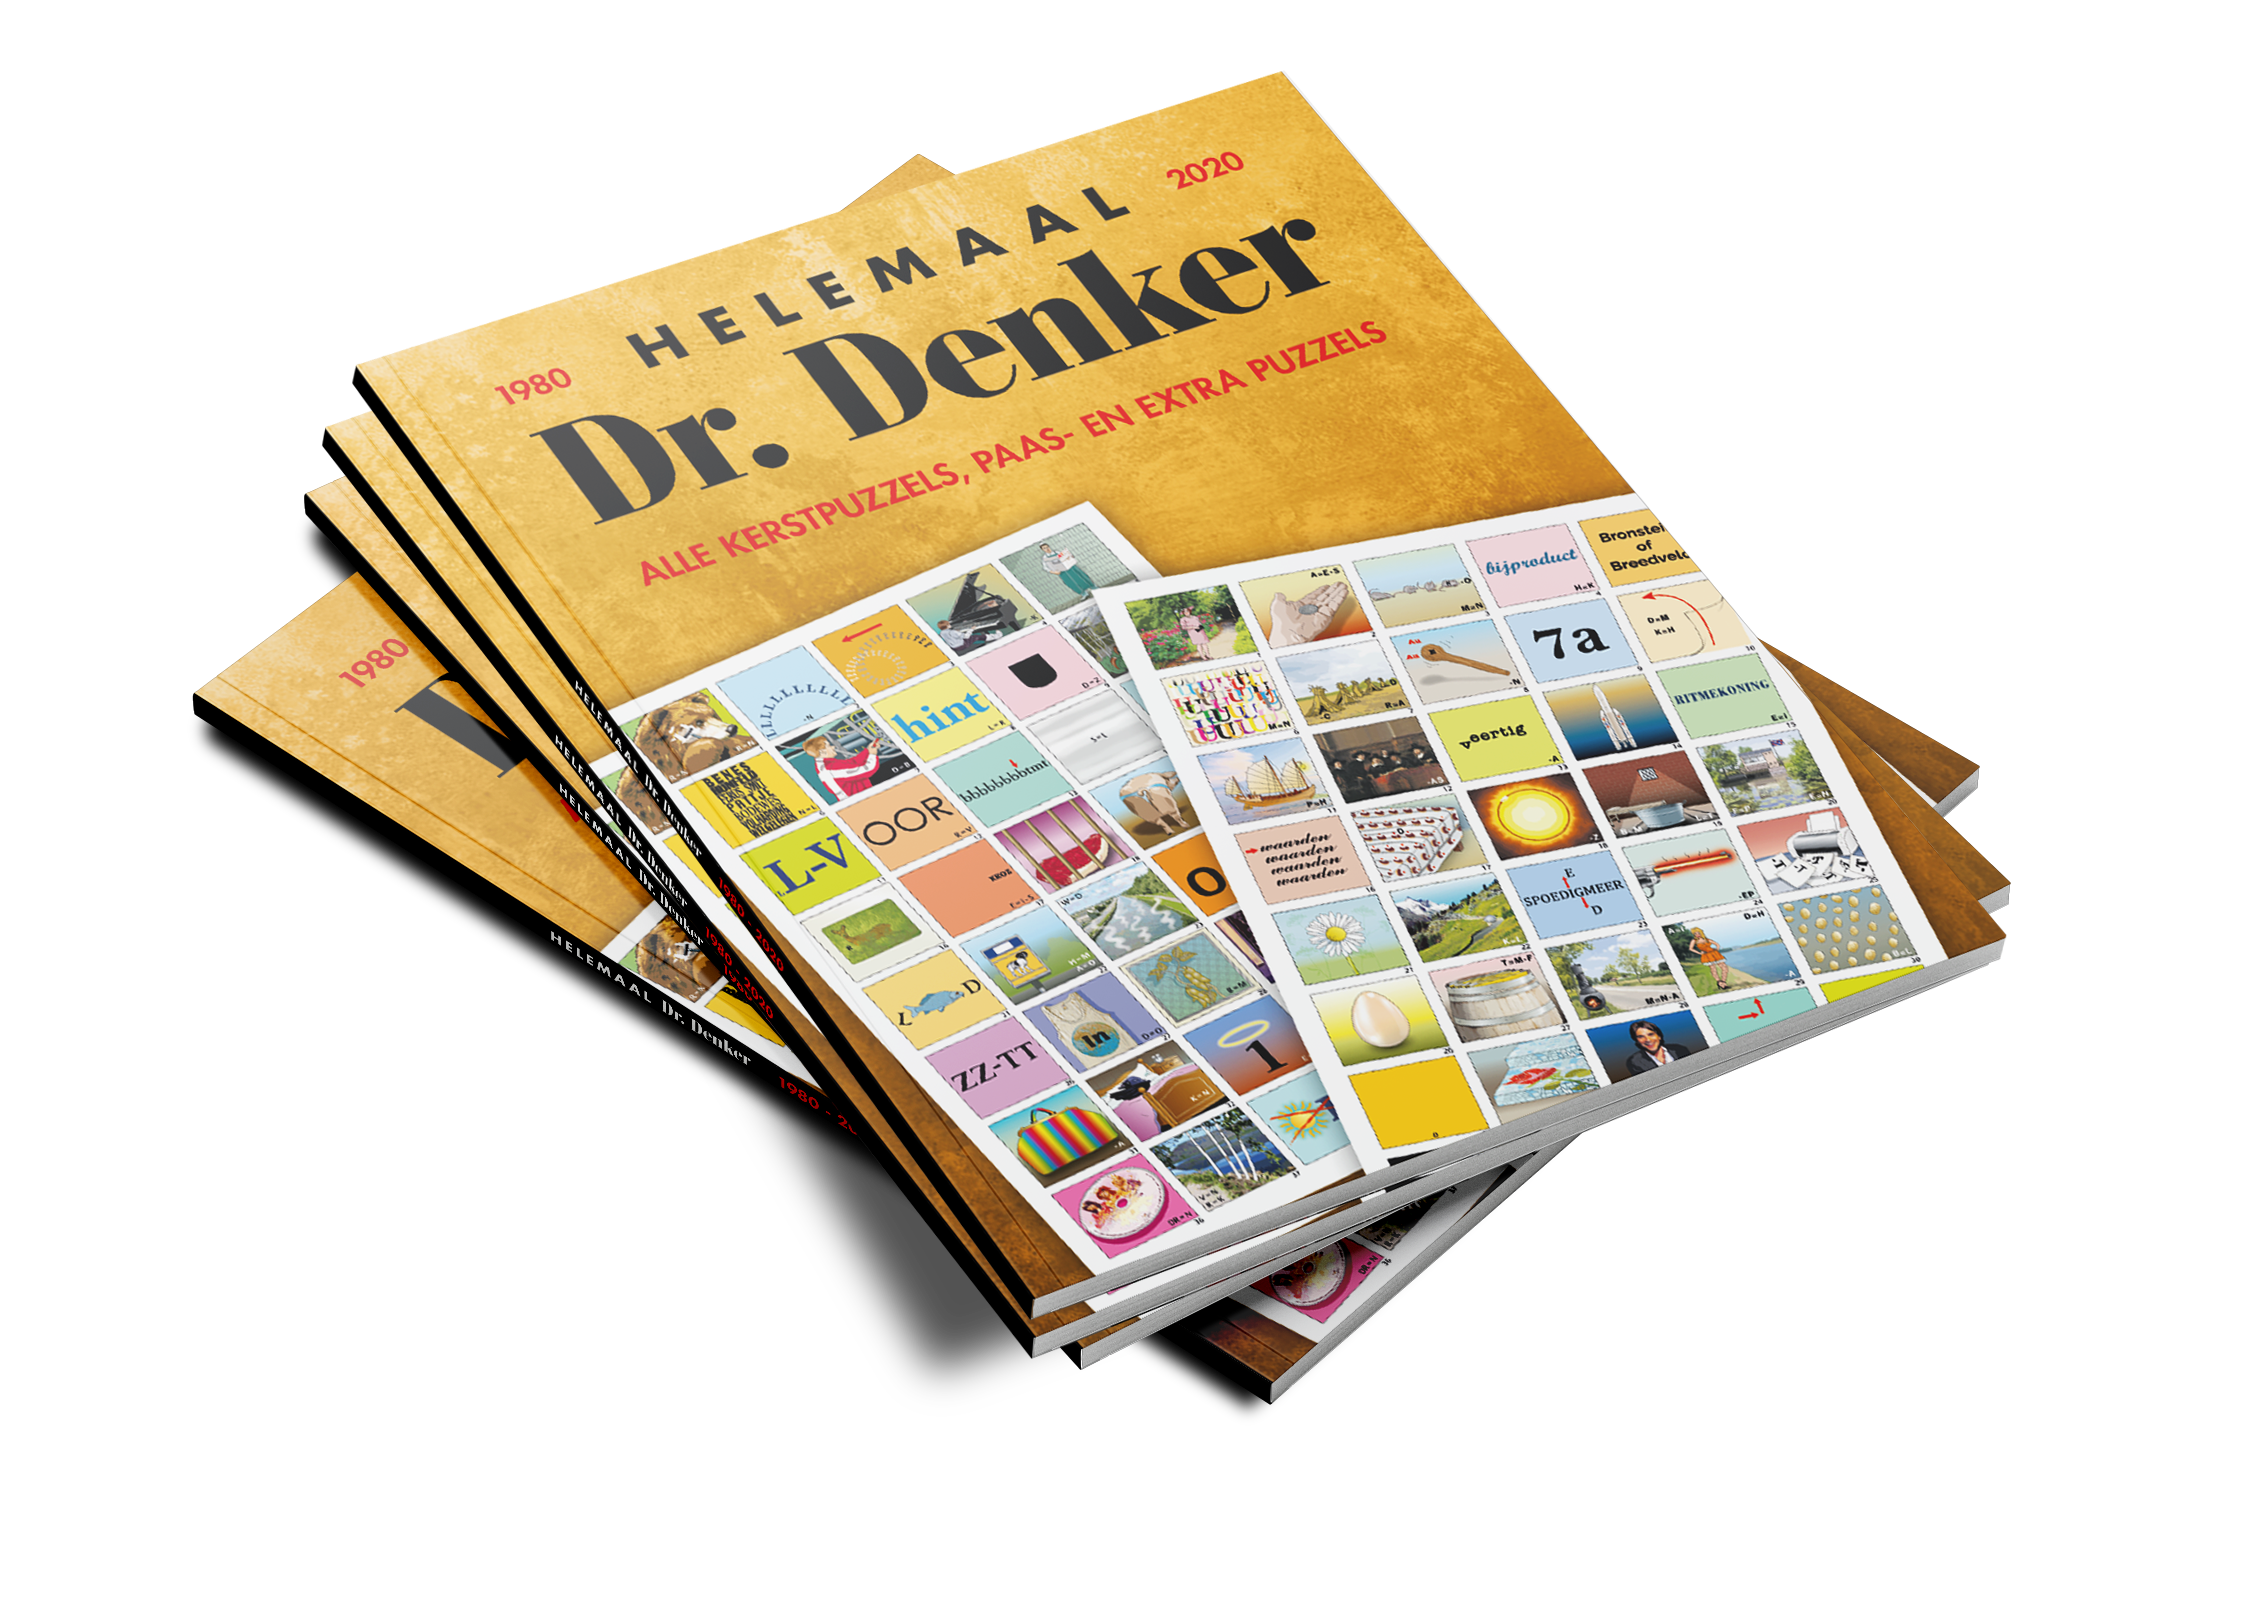 Prestige Ontstaan Maak los Helemaal Dr. Denker | Alle kerstpuzzels, paas- en extra puzzels